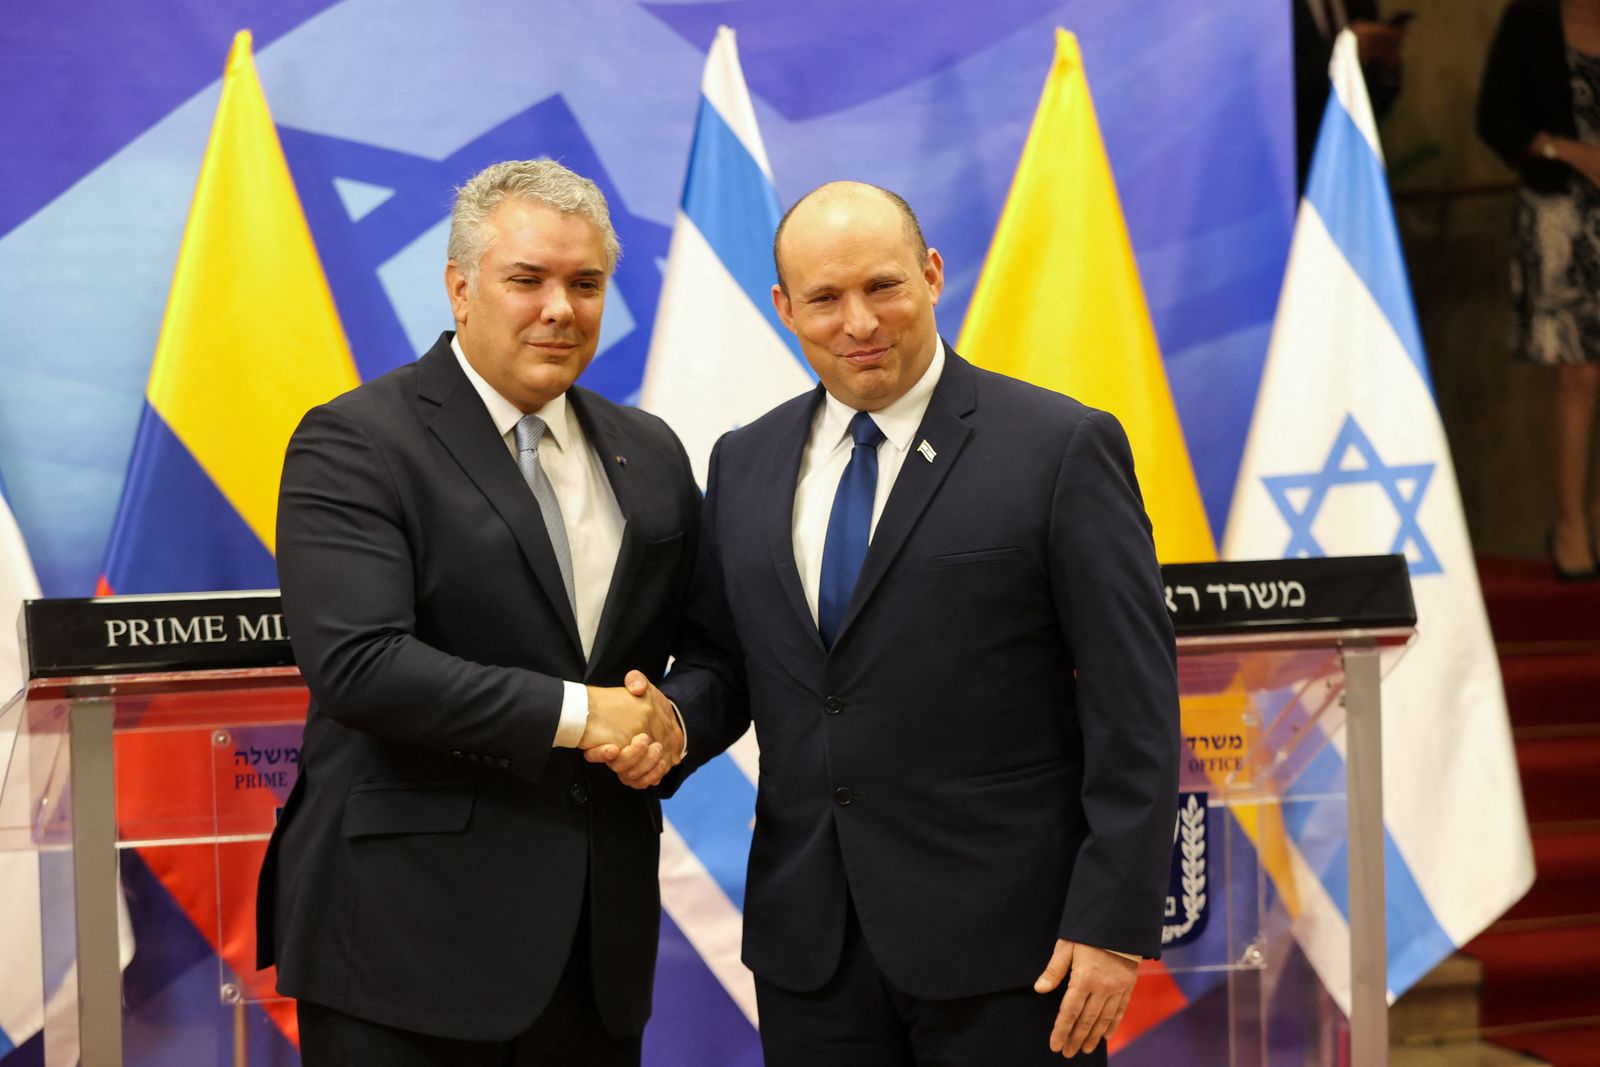 الرئيس الكولومبي إيفان دوكي يصافح رئيس وزراء إسرائيل فنتالي بينيت خلال زيارة رسمية إلى إسرائيل. 8 نوفمبر 2021. - AFP